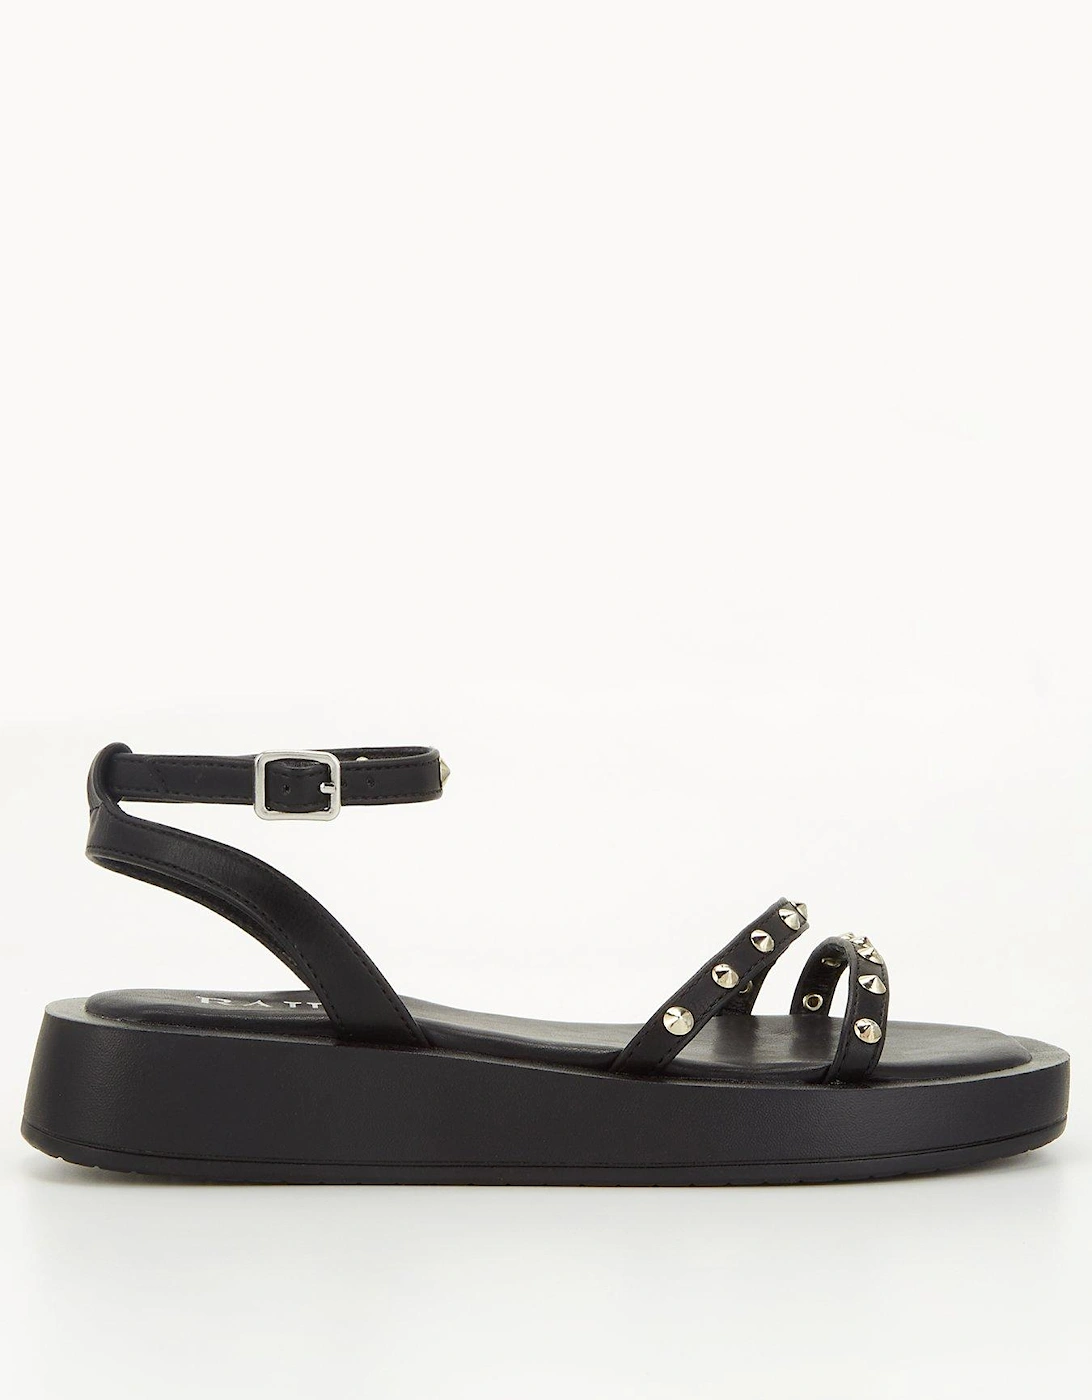 Reeta Flatform Embellished Sandals - Black, 3 of 2